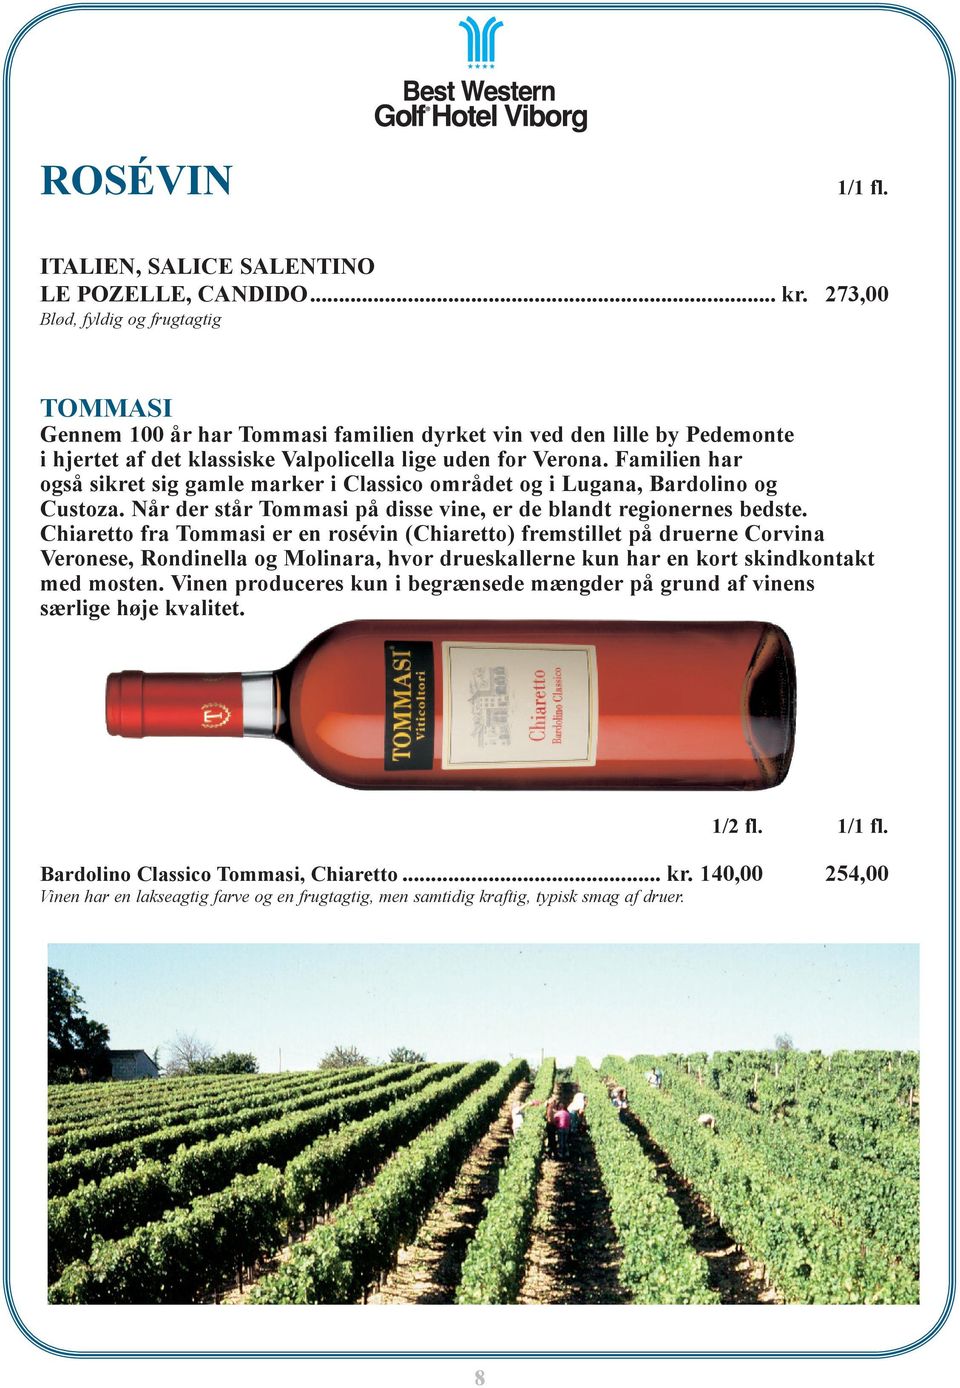 Familien har også sikret sig gamle marker i Classico området og i Lugana, Bardolino og Custoza. Når der står Tommasi på disse vine, er de blandt regionernes bedste.